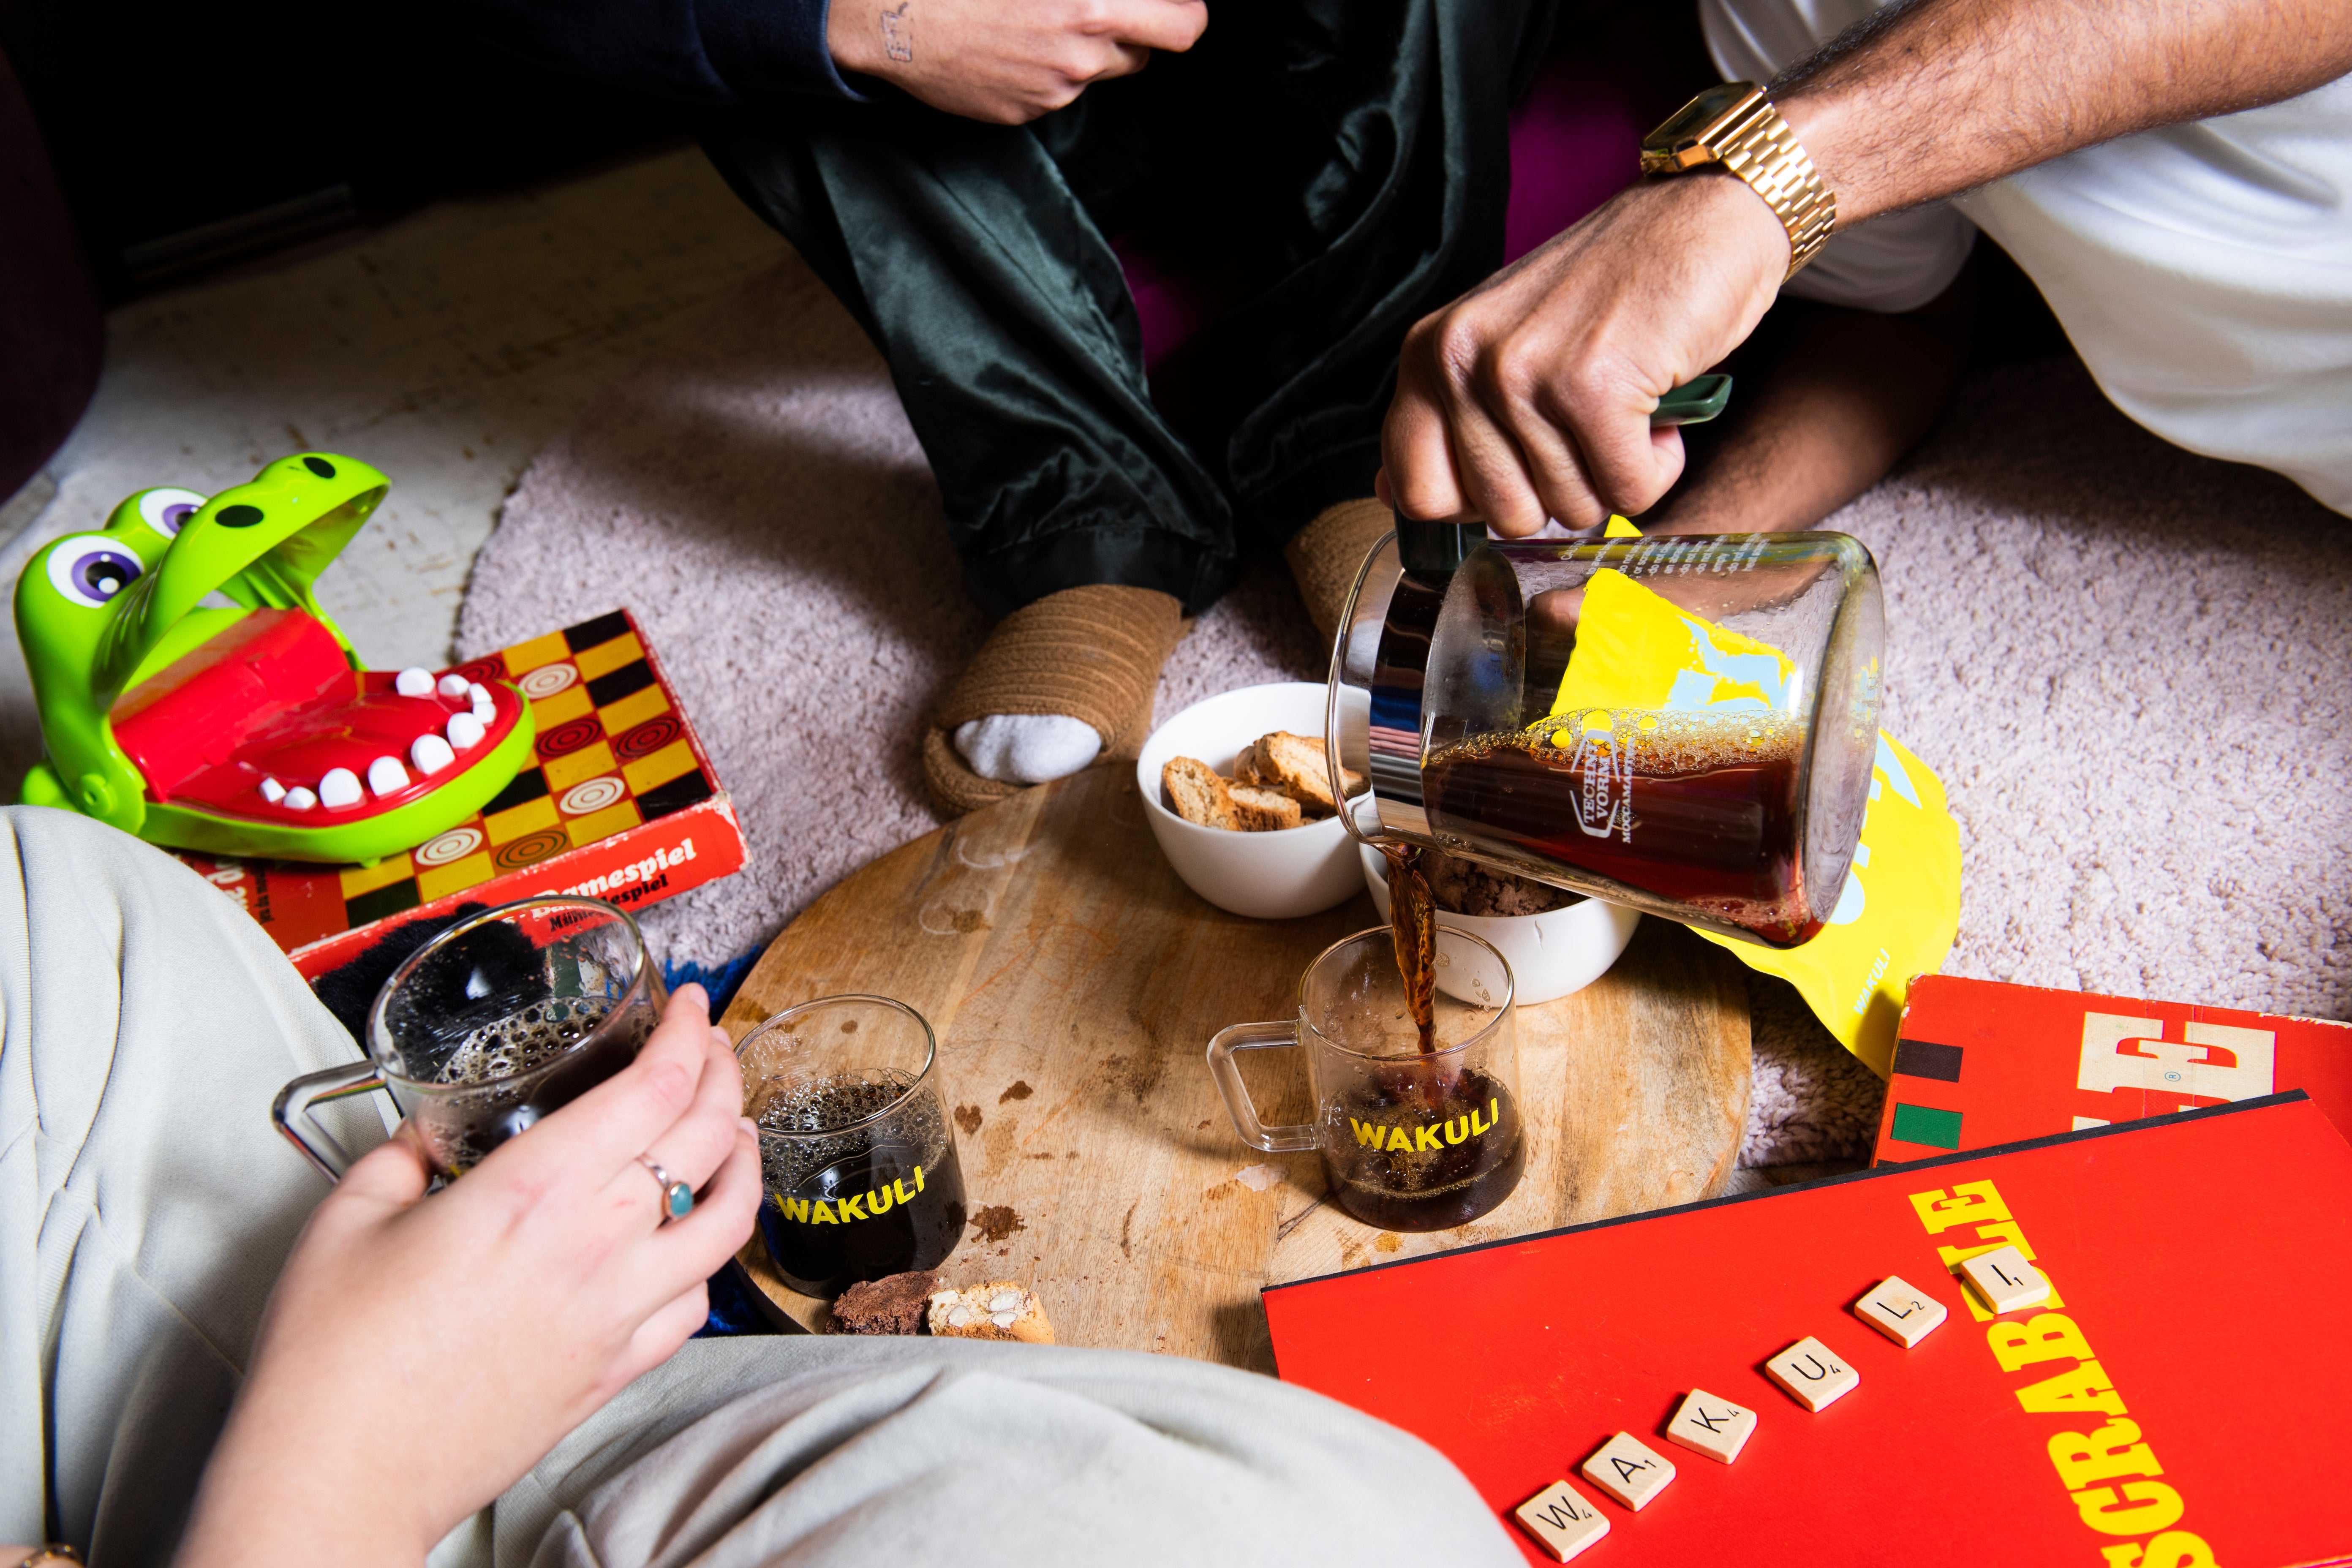 Verse koffiebonen proefpakket - Drie vrienden zitten rond een houten tafel. De een drinkt koffie uit een Wakuli-kopje, terwijl de ander zwarte koffie in een ander Wakuli-kopje schenkt. Op de tafel liggen verschillende spelletjes.